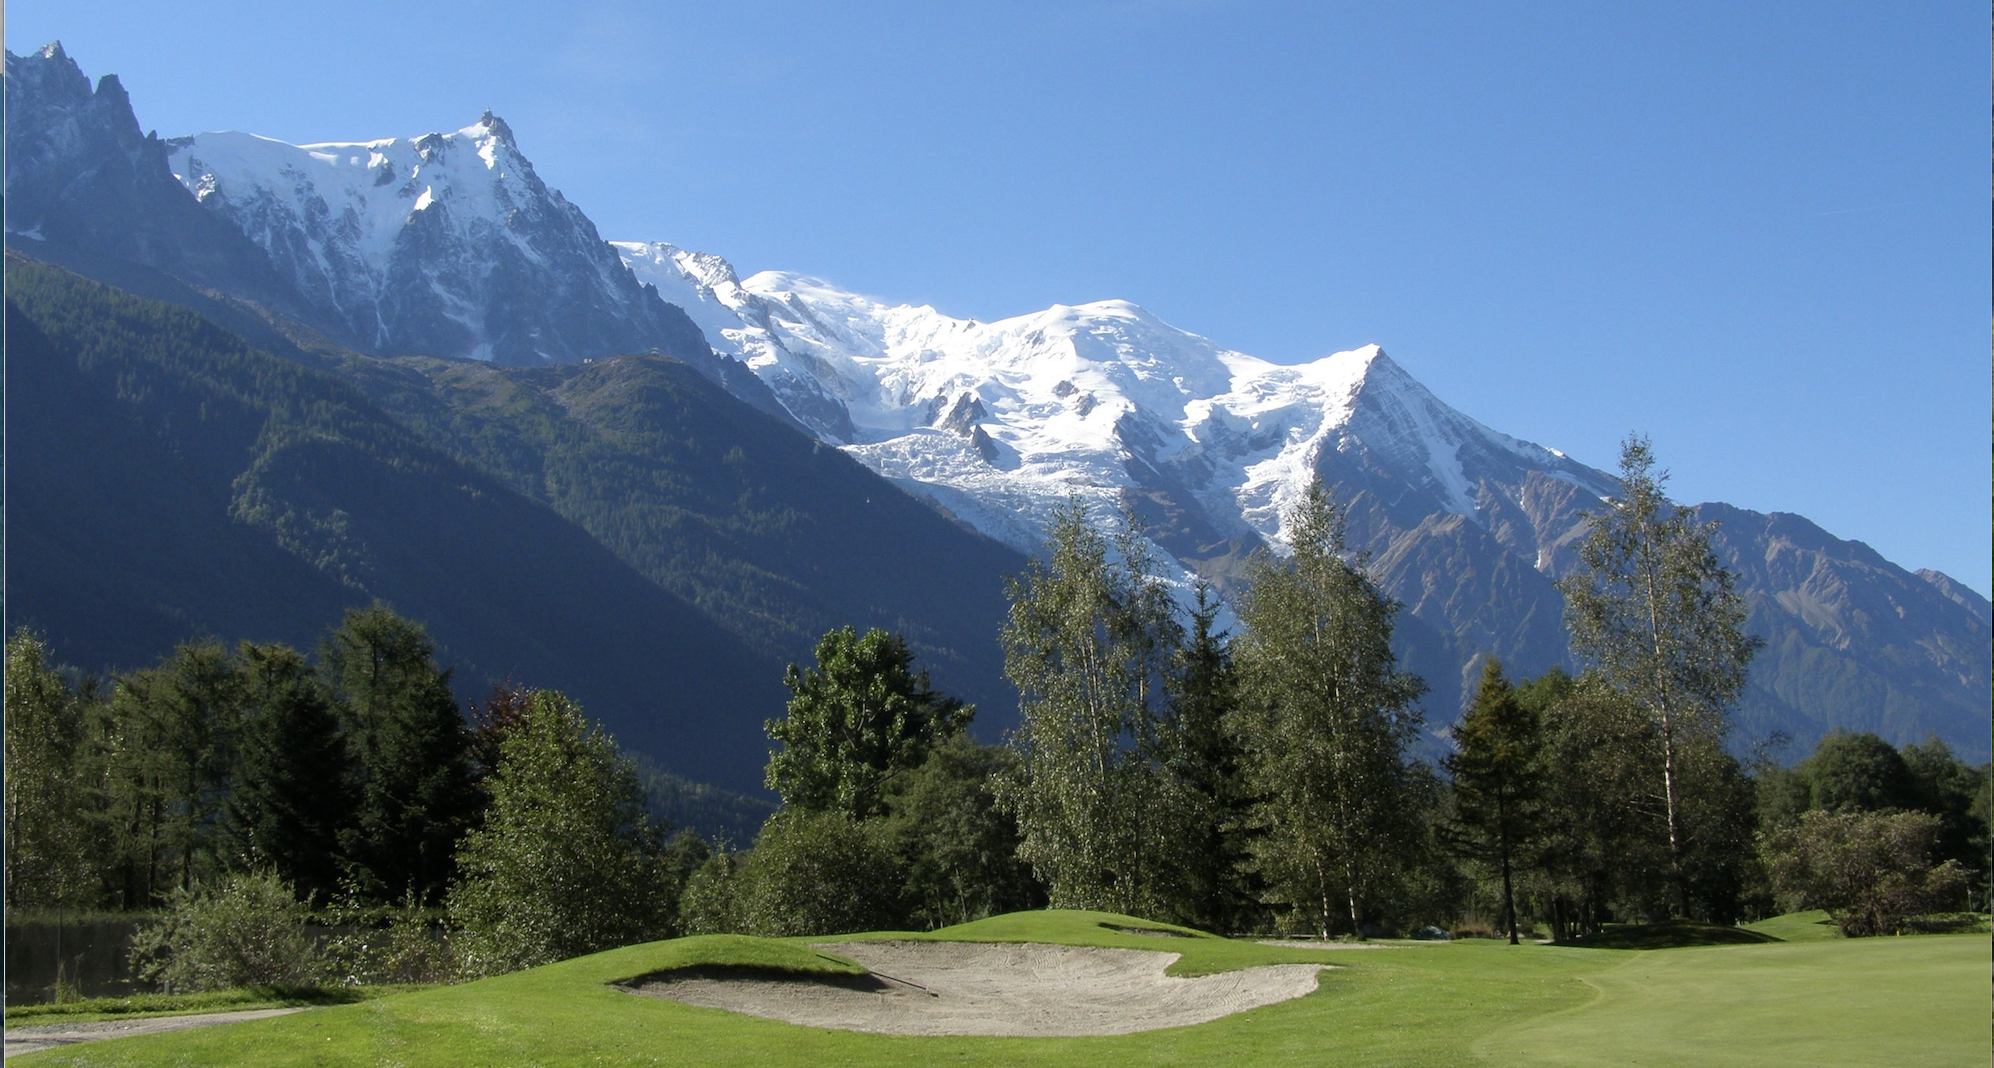 Concession de service public portant sur l’exploitation et les aménagements du golf de Chamonix Mont-Blanc